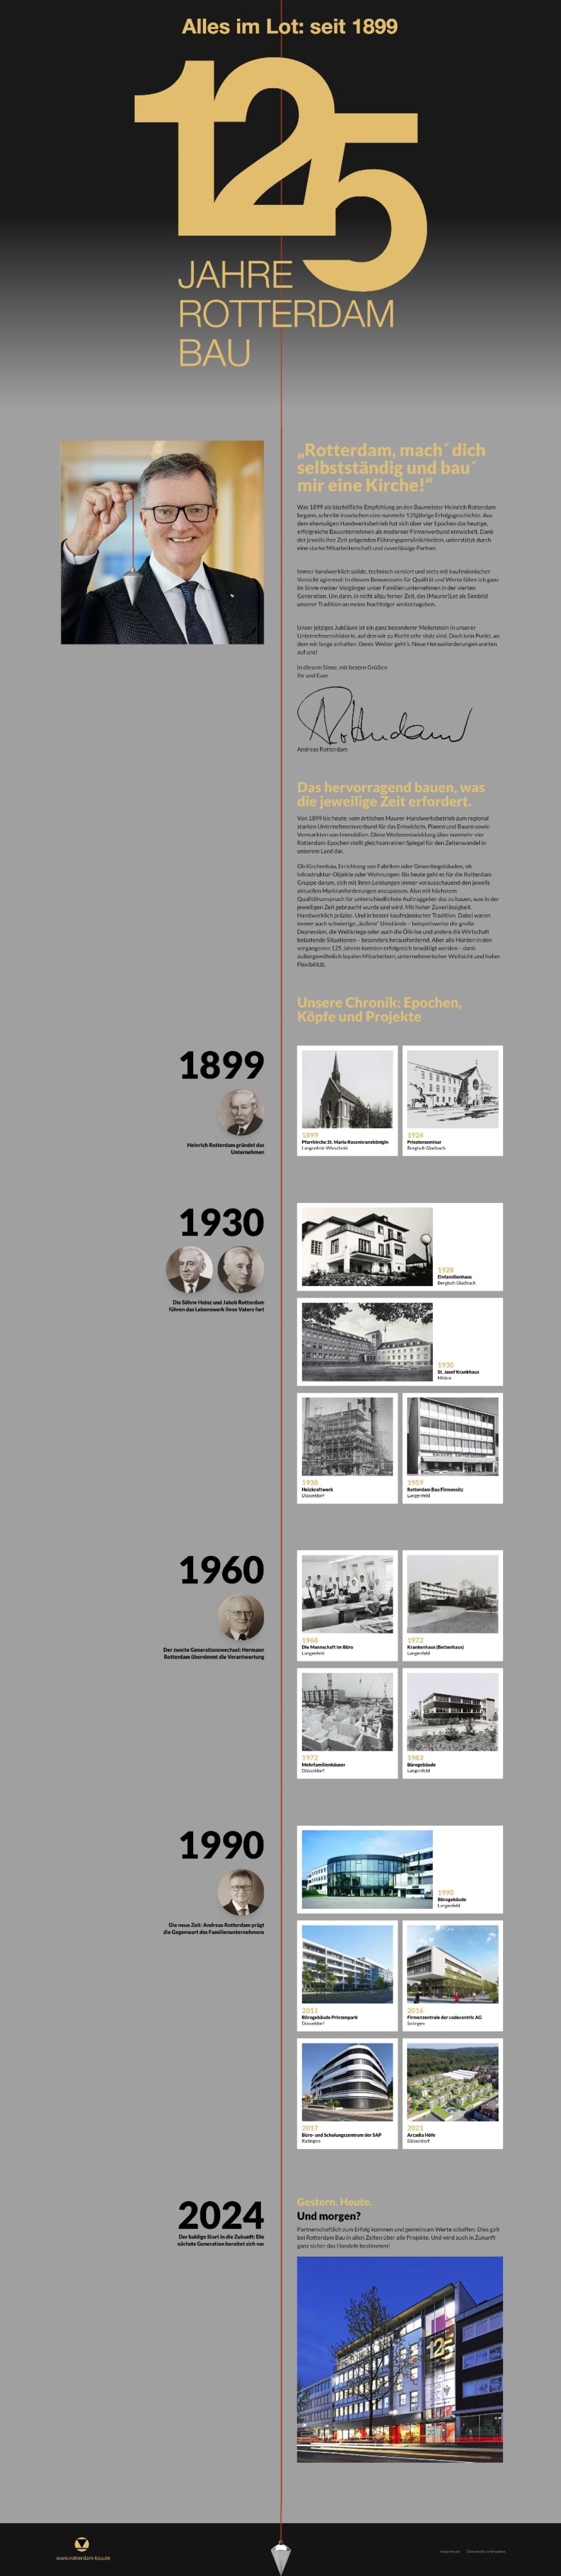 Unsere Werbeagentur erstellt Jubiläumsseite für Rotterdam Bau, zeigt Meilensteine der Unternehmensgeschichte